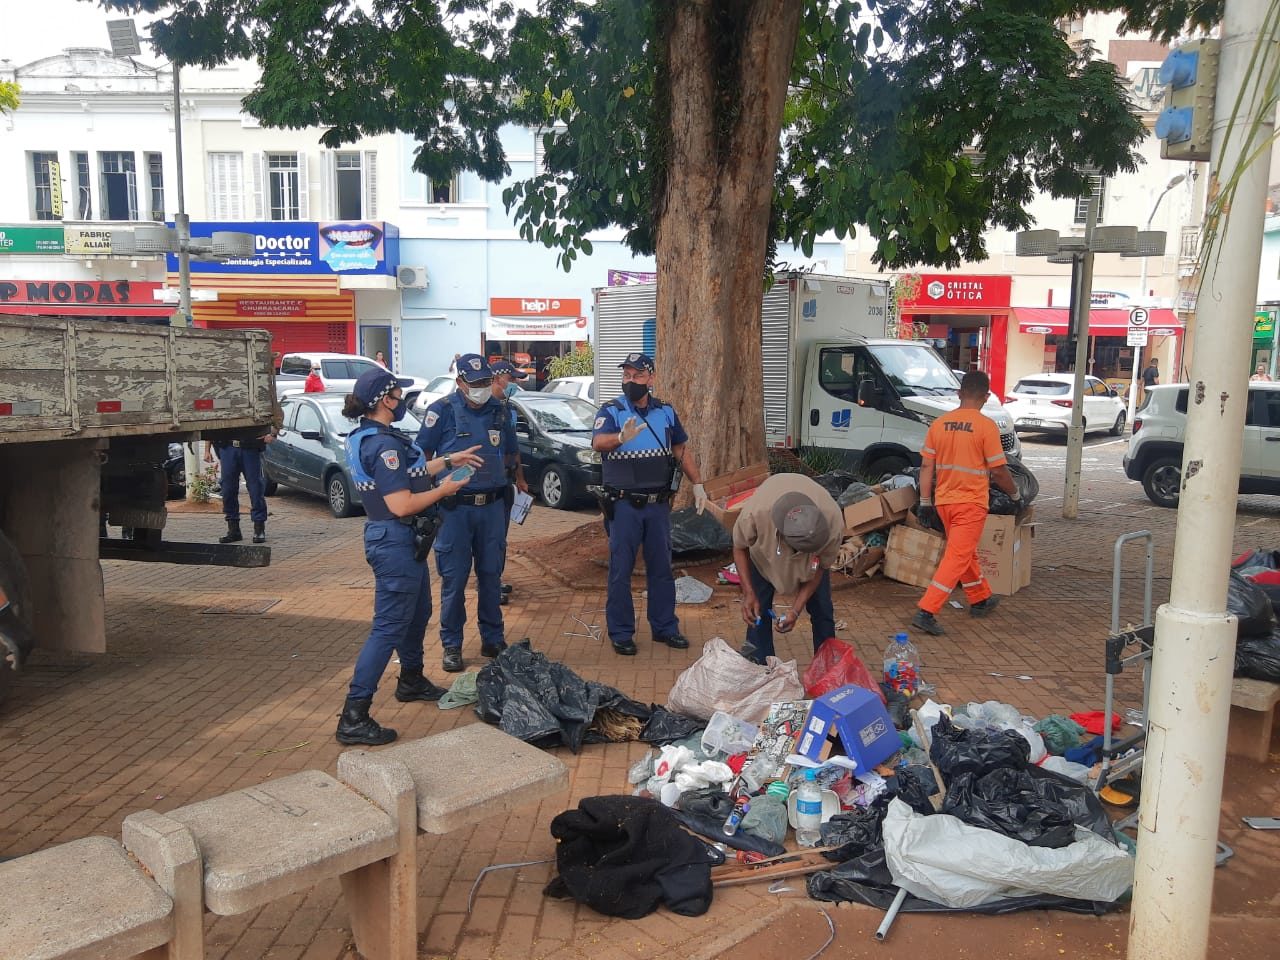 Praça da região central, com policiais e profissional da limpeza pública em torno de homem abaixado, usando boné, com lixo espalhado sobre o chão, com caçamba da caminhão ao lado.